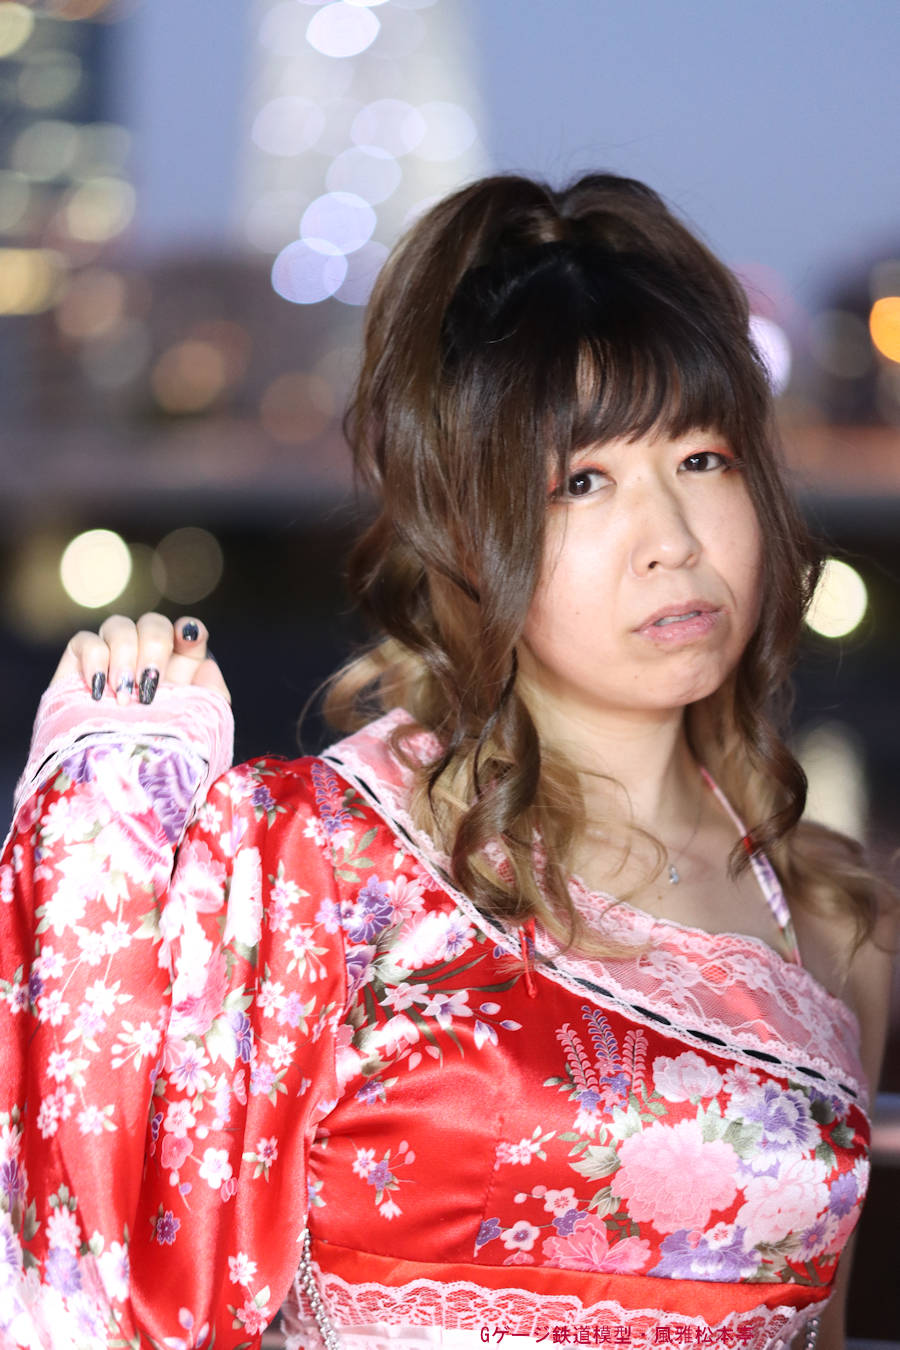 キヤノン(佳能)・EOS-M6mk2での撮影例、モデルの女性はアイドル歌手の神崎由衣(かんざき・ゆい)さん。